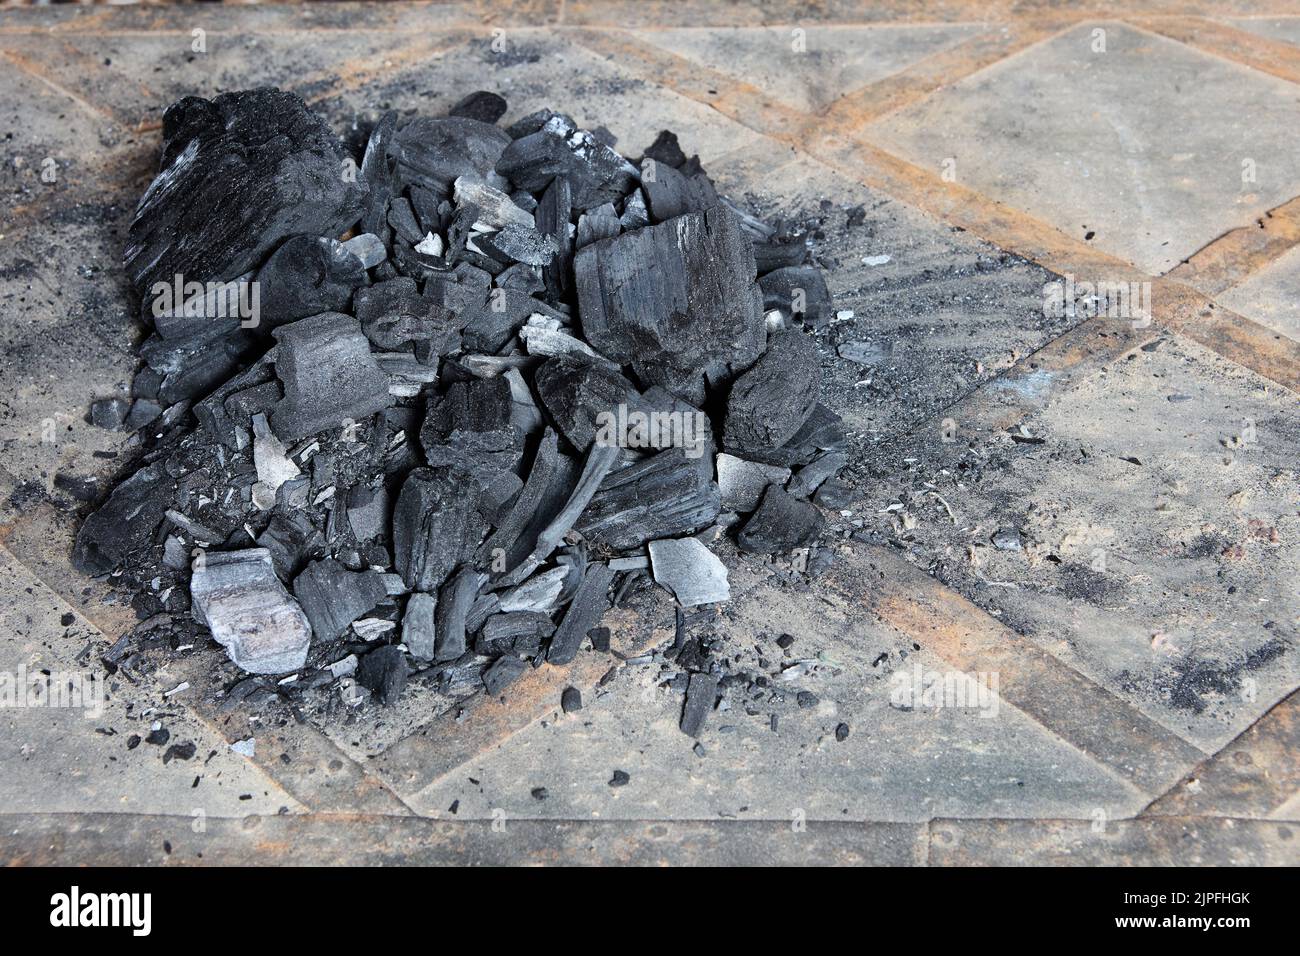 Stapel von Holzkohle liegt auf dem Boden in Erwartung der Heizperiode in den nördlichen Breiten des Planeten. Stockfoto